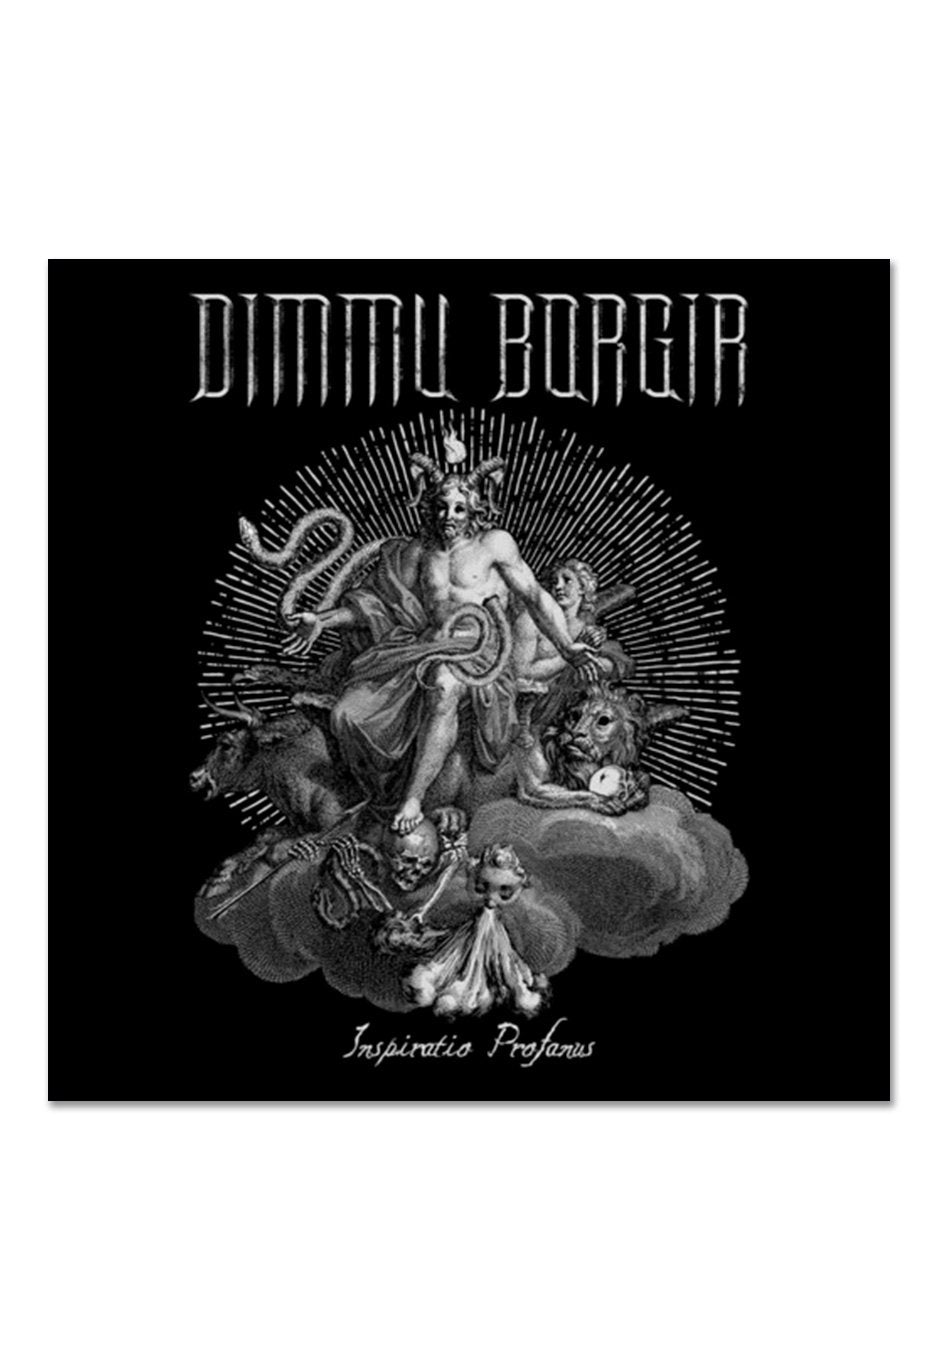 Dimmu Borgir - Inspiratio Profanus White w/ Black - Splattered Vinyl